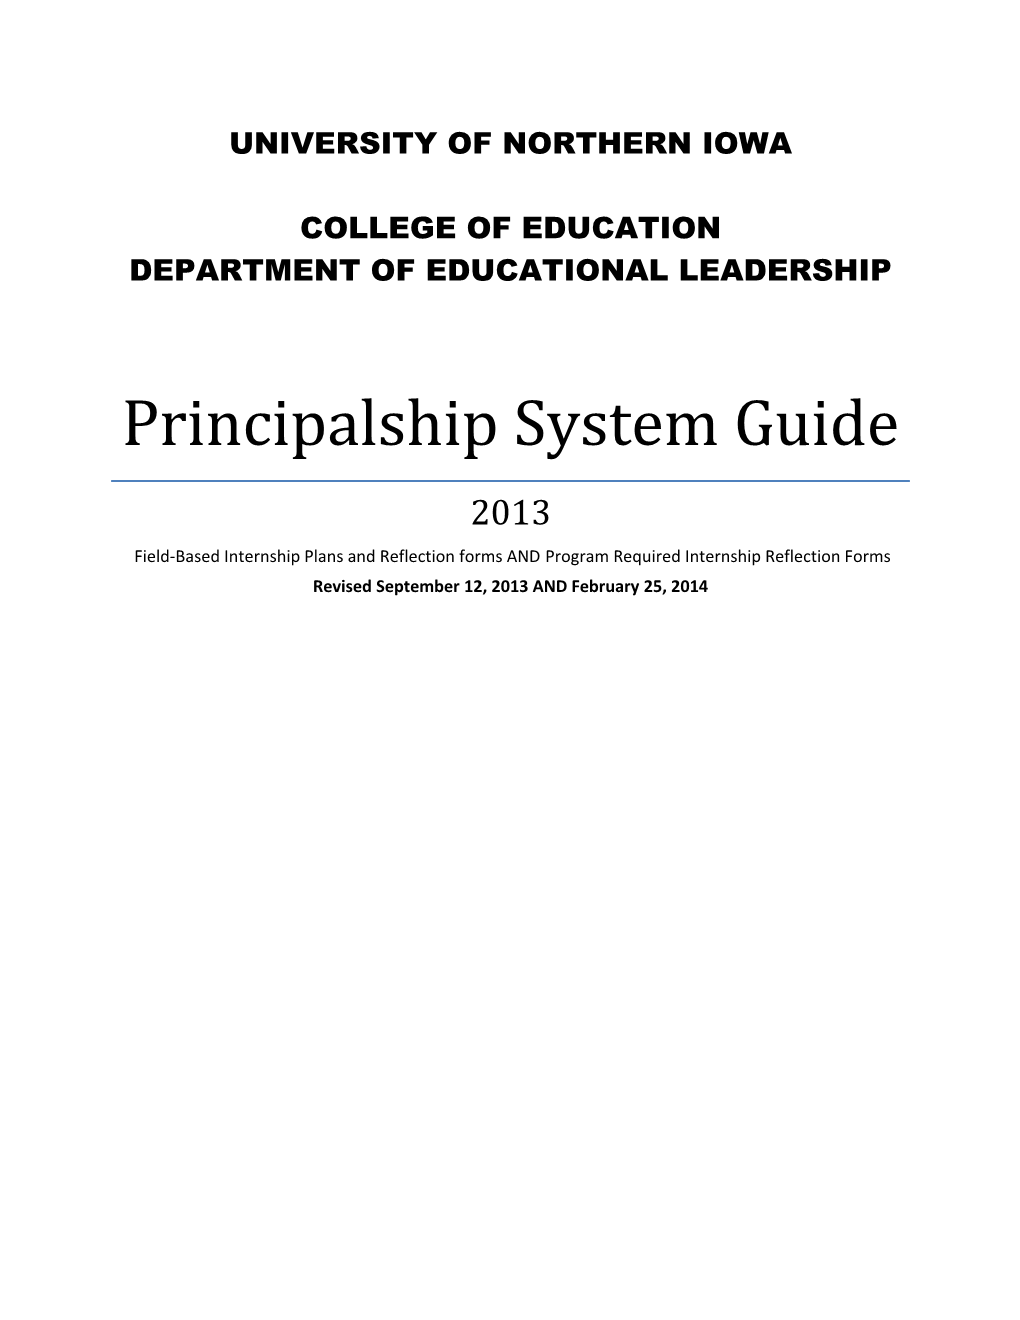 Principalship System Guide